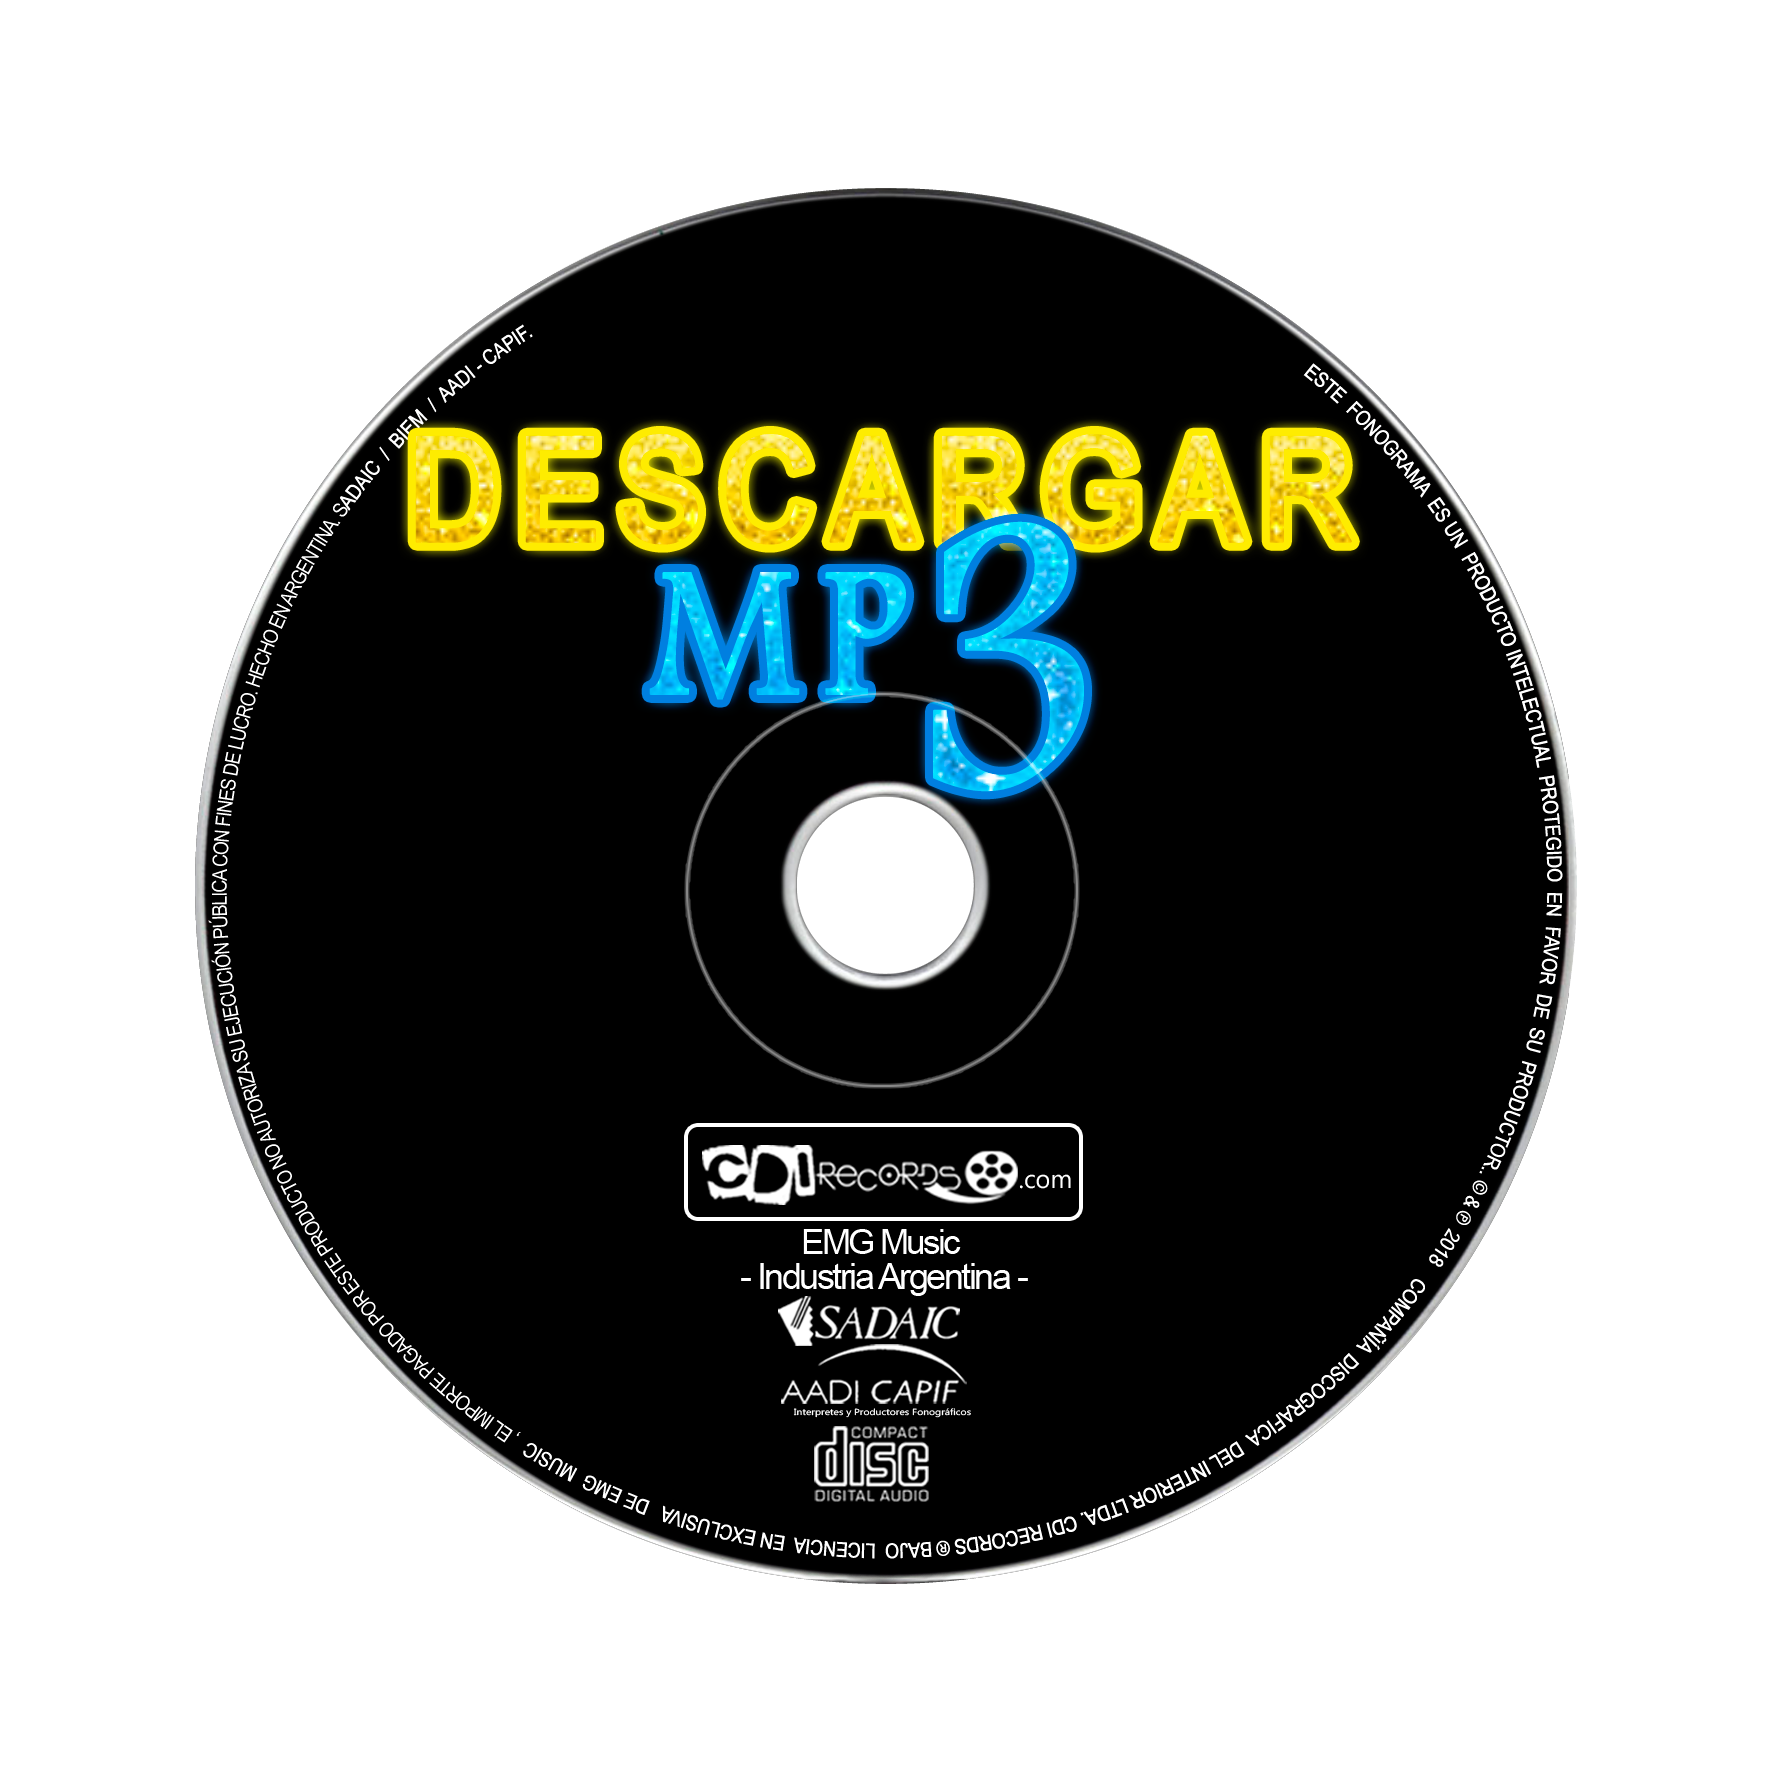 Frank Worthley repertorio Estable DESCARGAR CD COMPLETOS - Disponible para descarga en mp3 | Available for  download in mp3